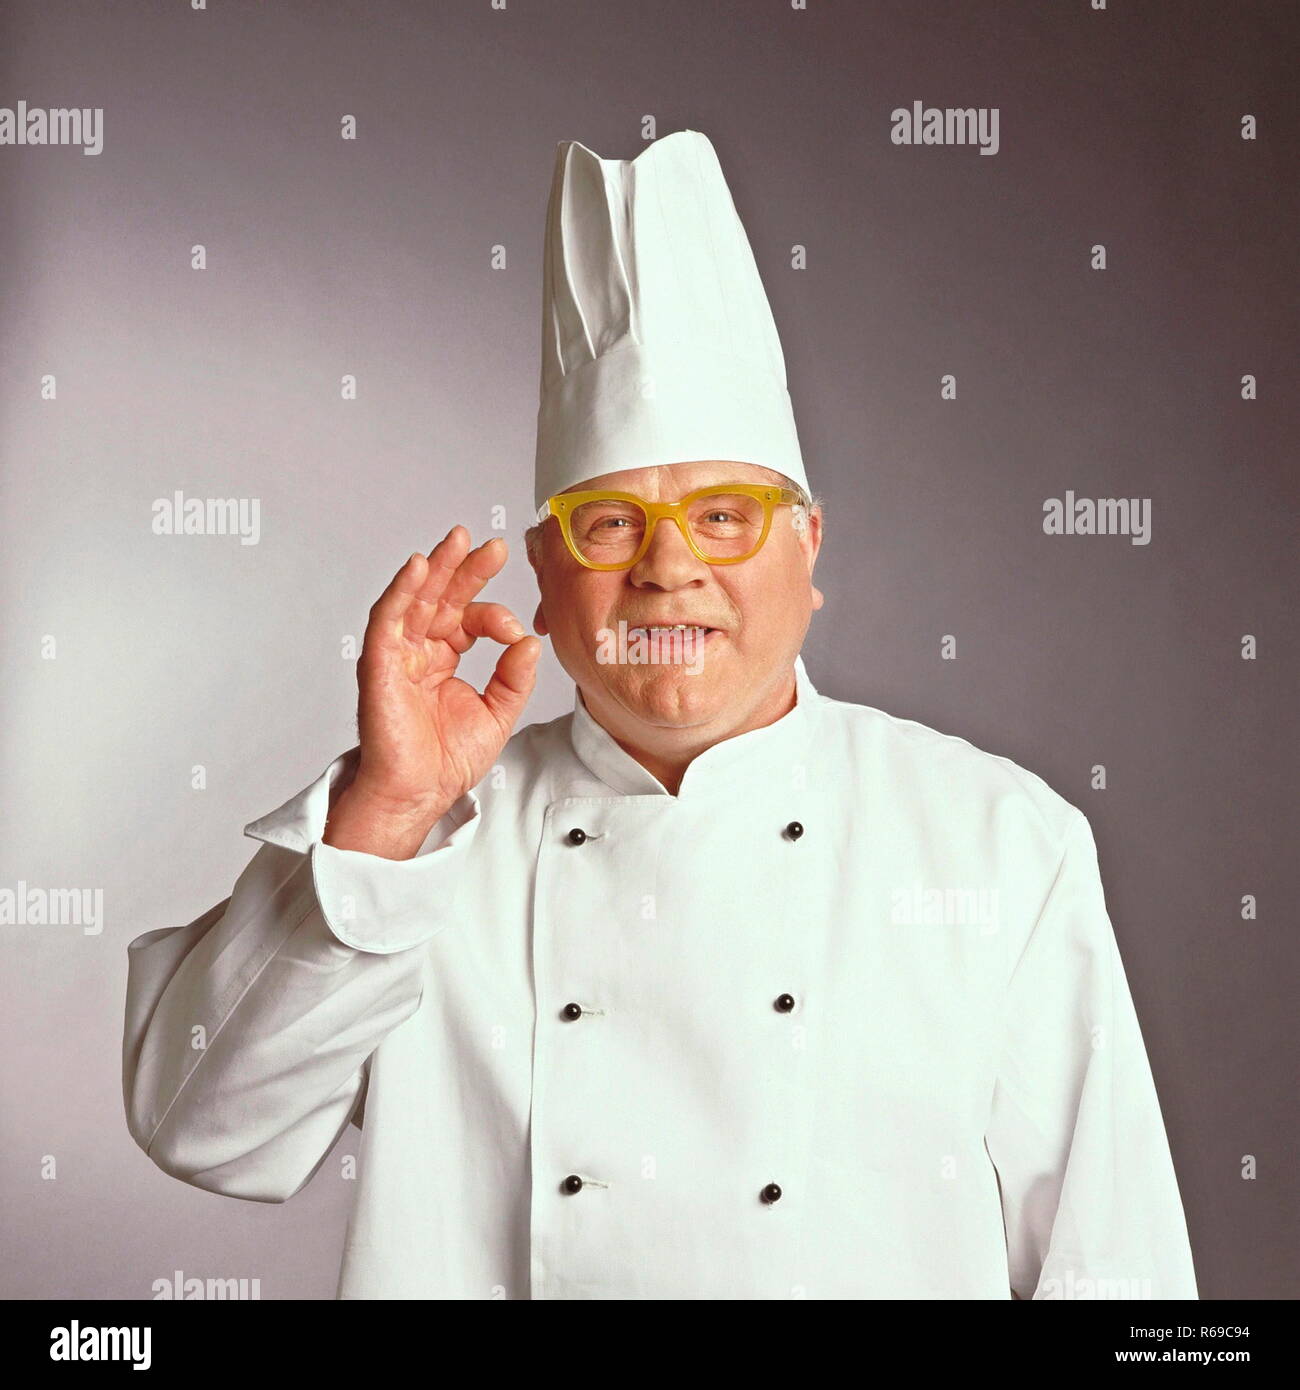 Portrait, Halbfigur, Chefkoch in Arbeitskleidung mit gelber Hornbrille Stock Photo